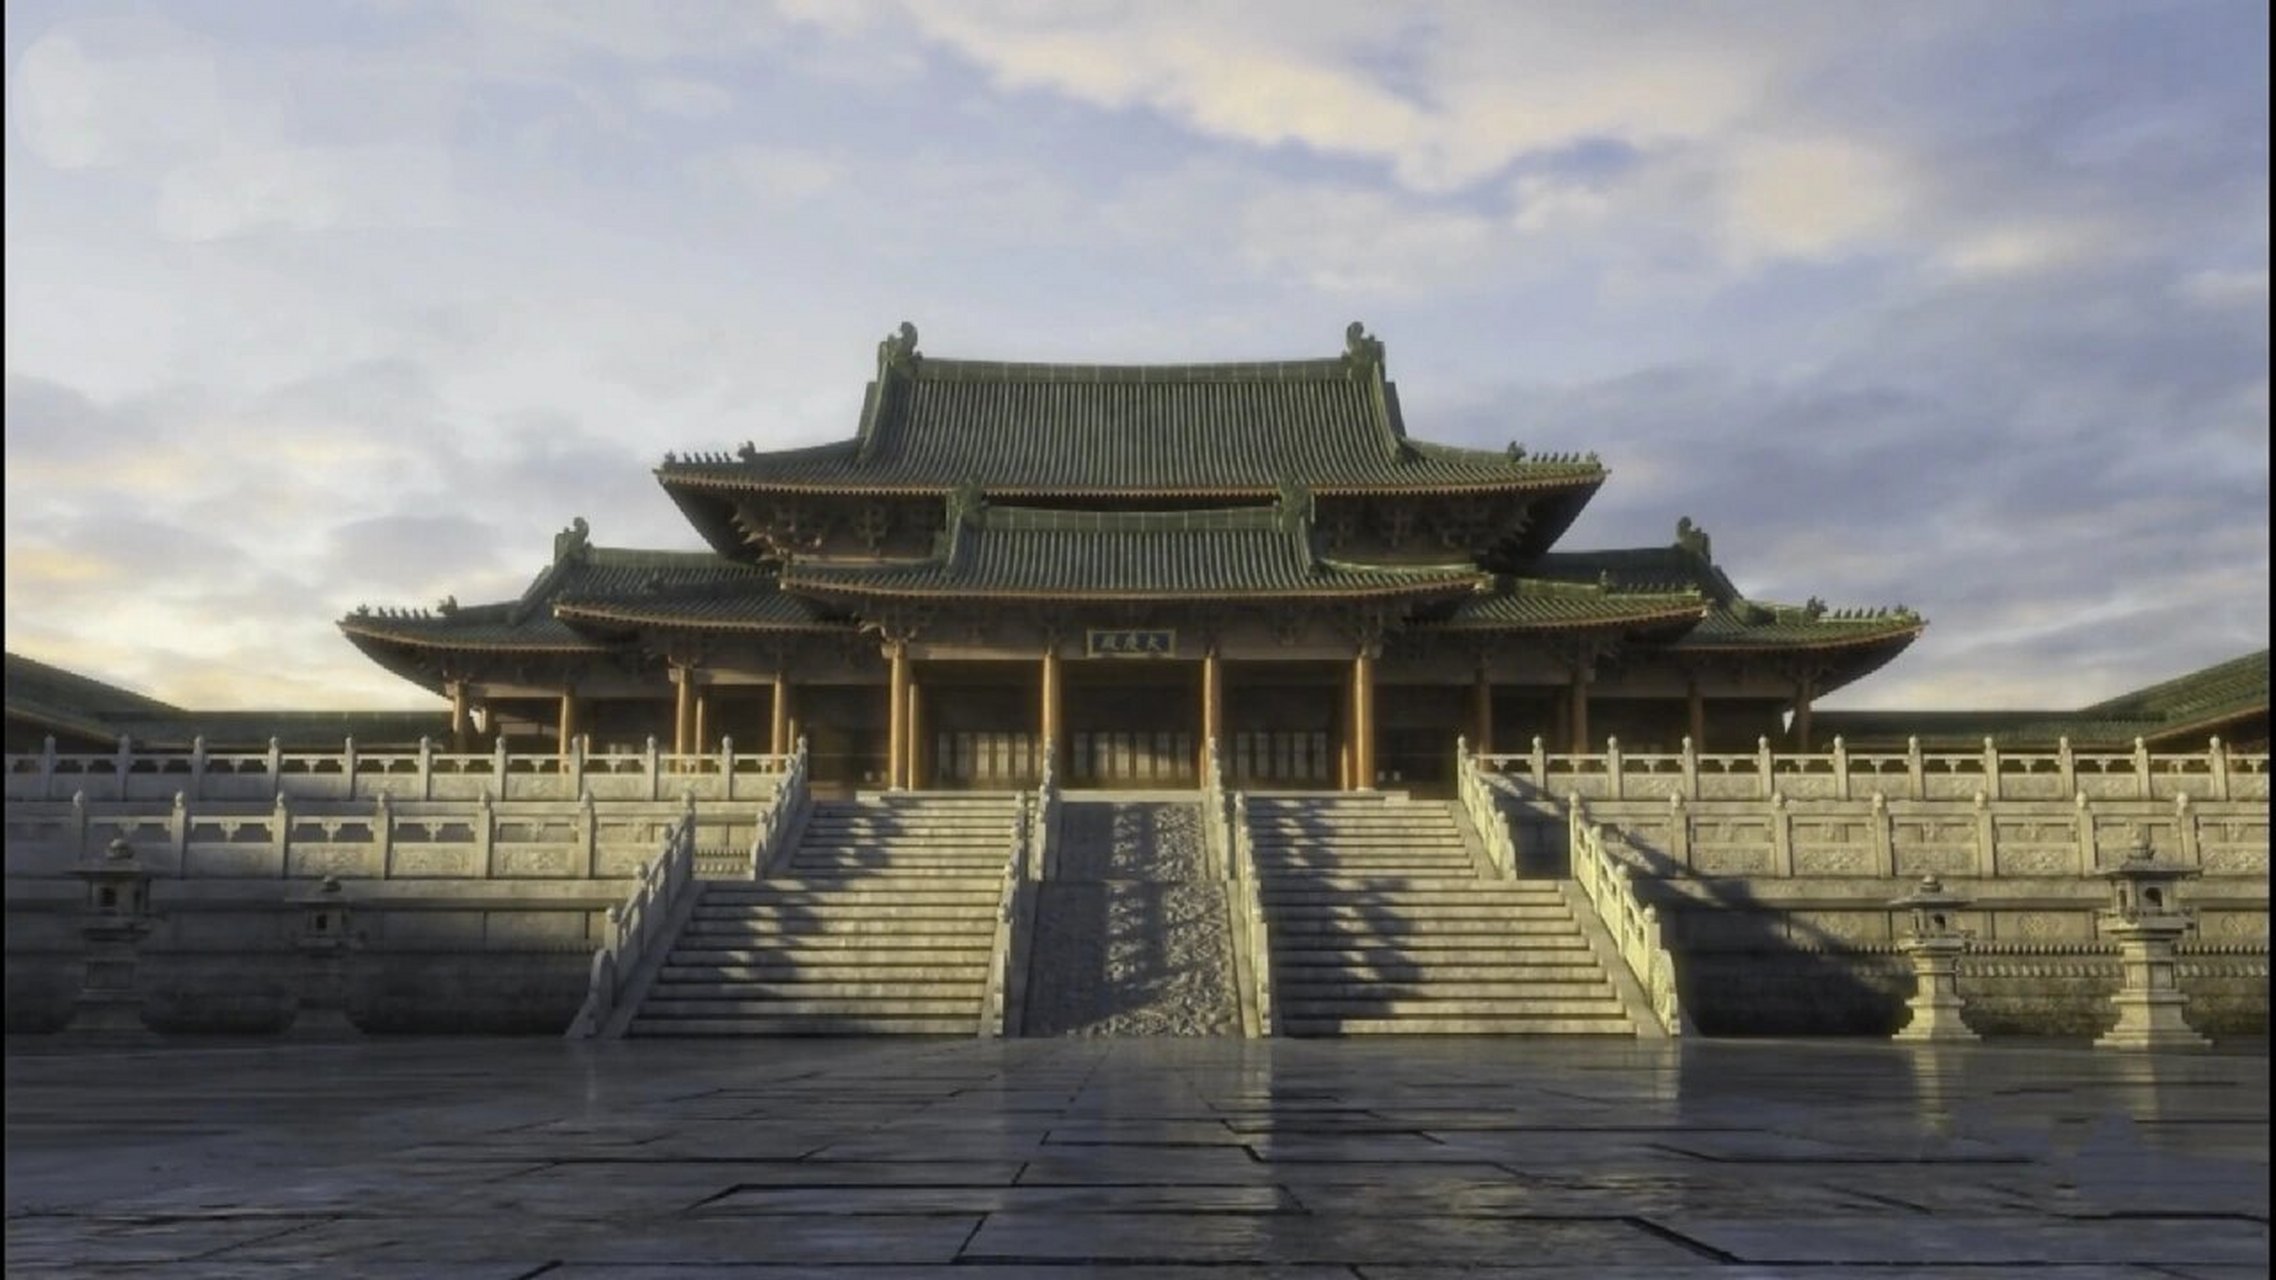 古建筑文化:中国古代著名宫殿之南宋皇宫 南宋皇城,南宋政权(公元1127